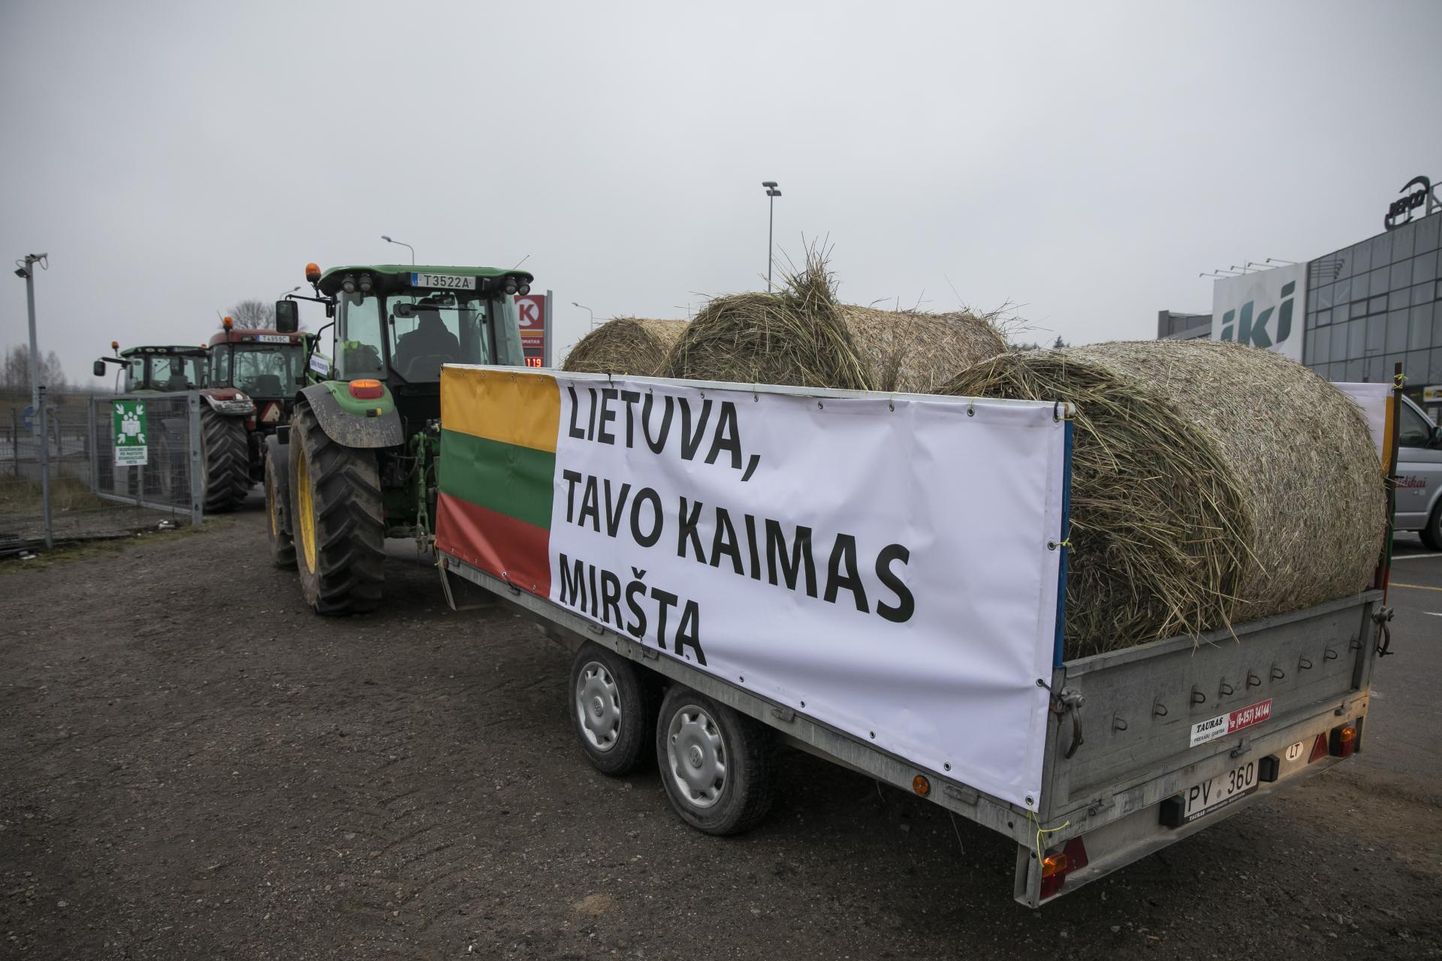 Teisipäeval täitusid Leedu maanted traktoritega, millest osa suundusid pealinna Vilniusesse. Pahased põllumehed tahtsid sellega tuletada valitsusele meelde, et enne seaduste muutmist võiks asju ka nendega arutada. 